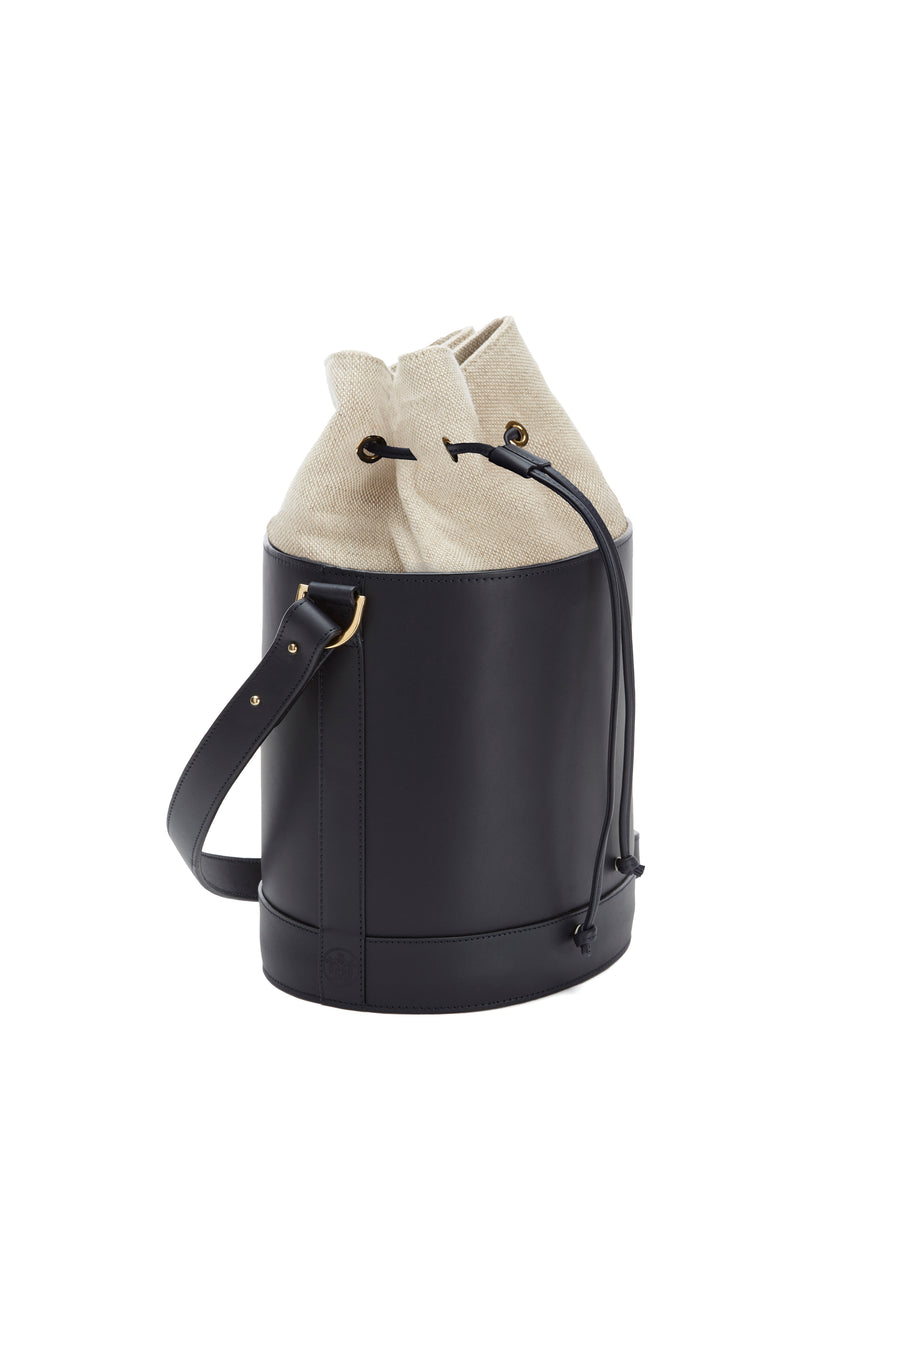 Bucket Bag in Navy and Linen